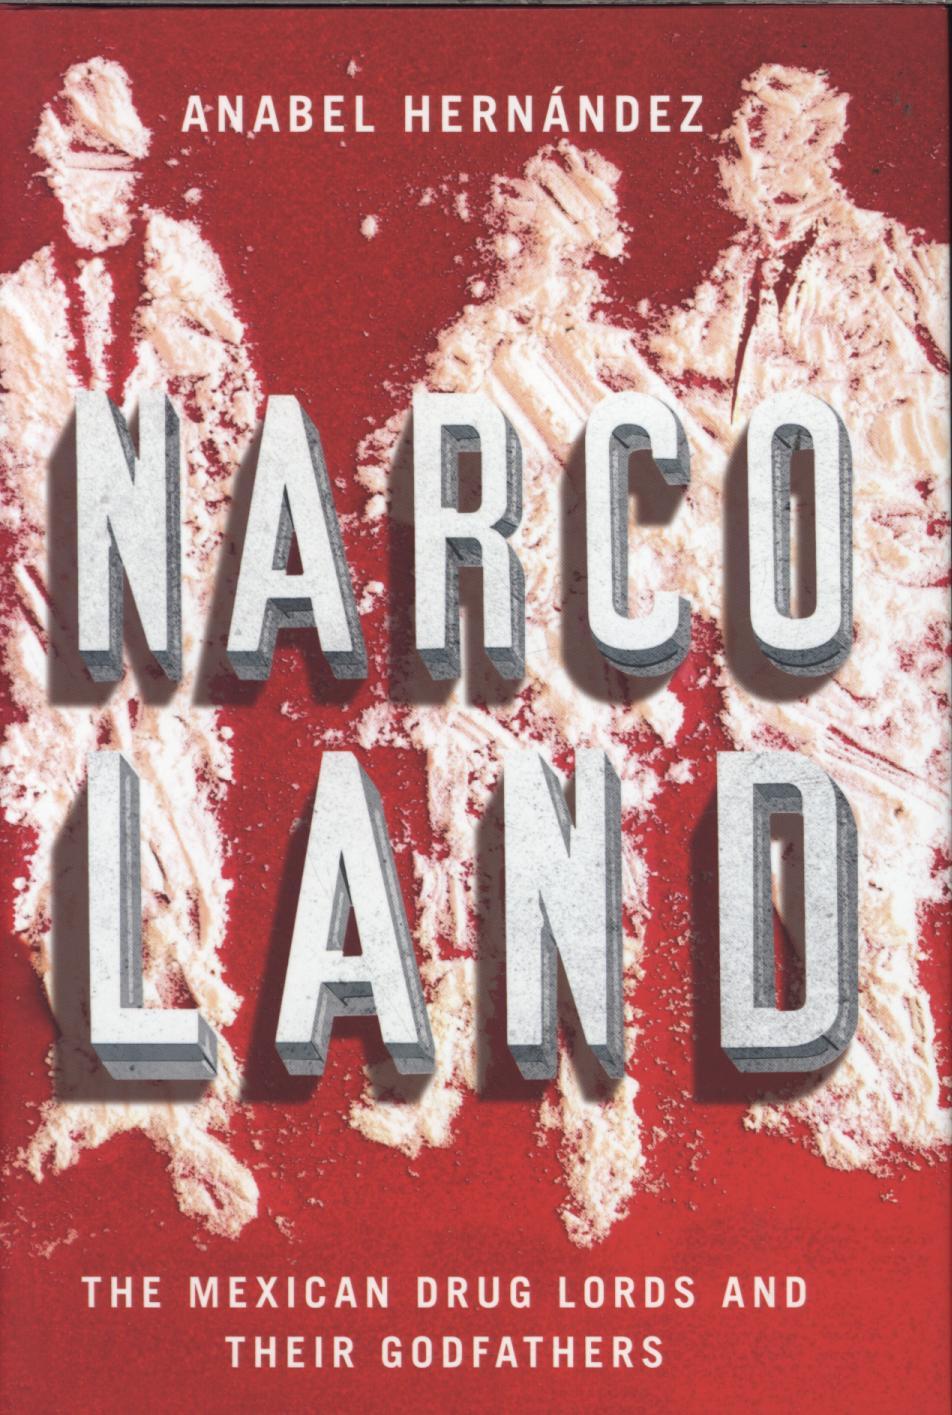 Narcoland